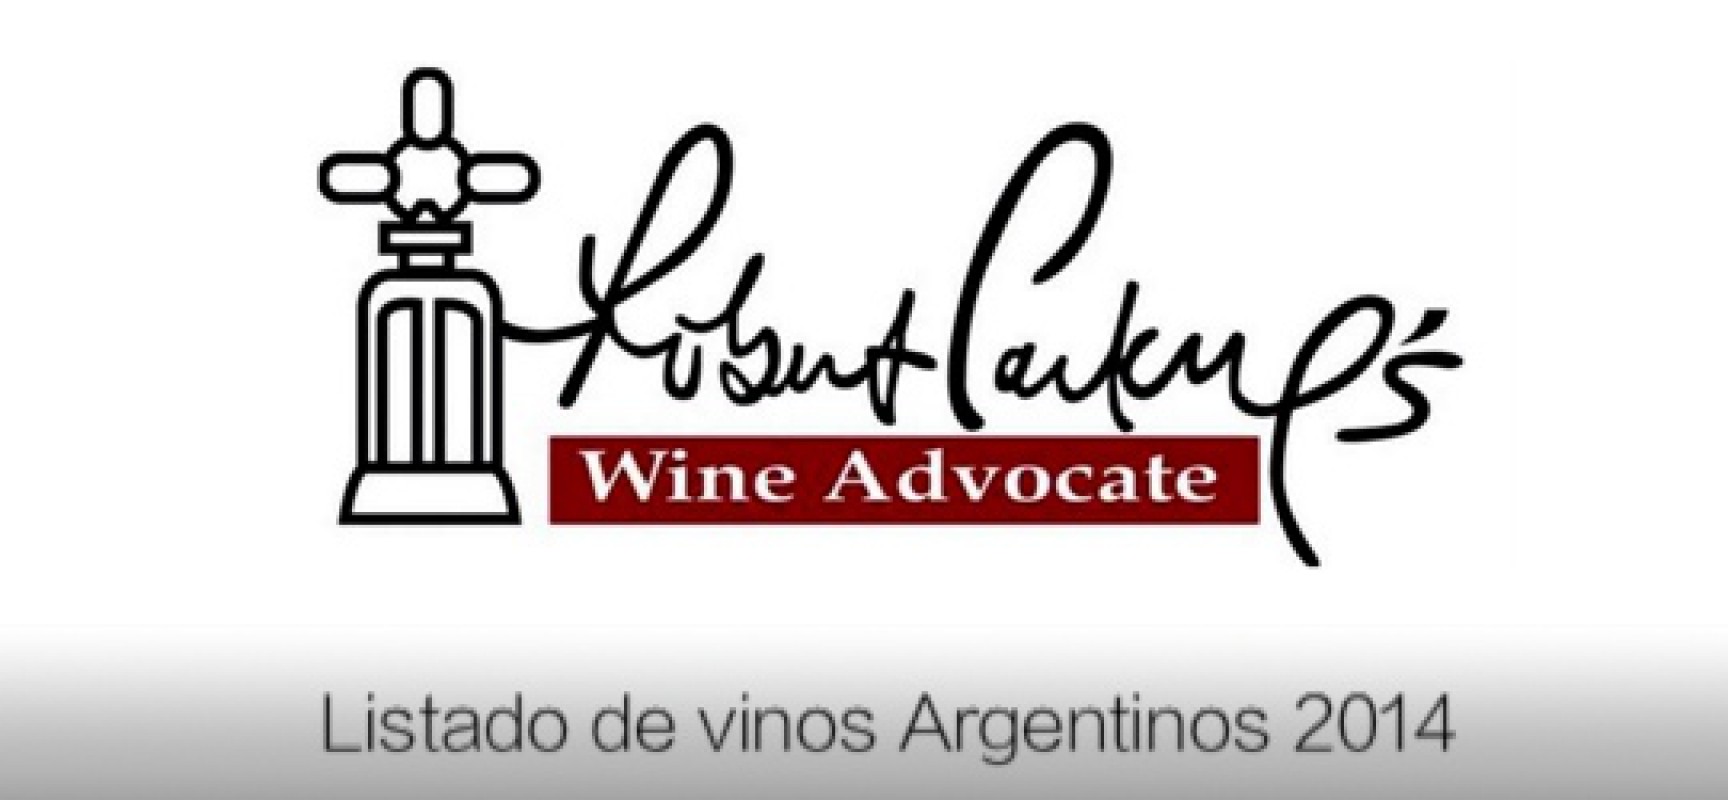 Lista de los mejores vinos de Argentina según Robert Parker en 2014